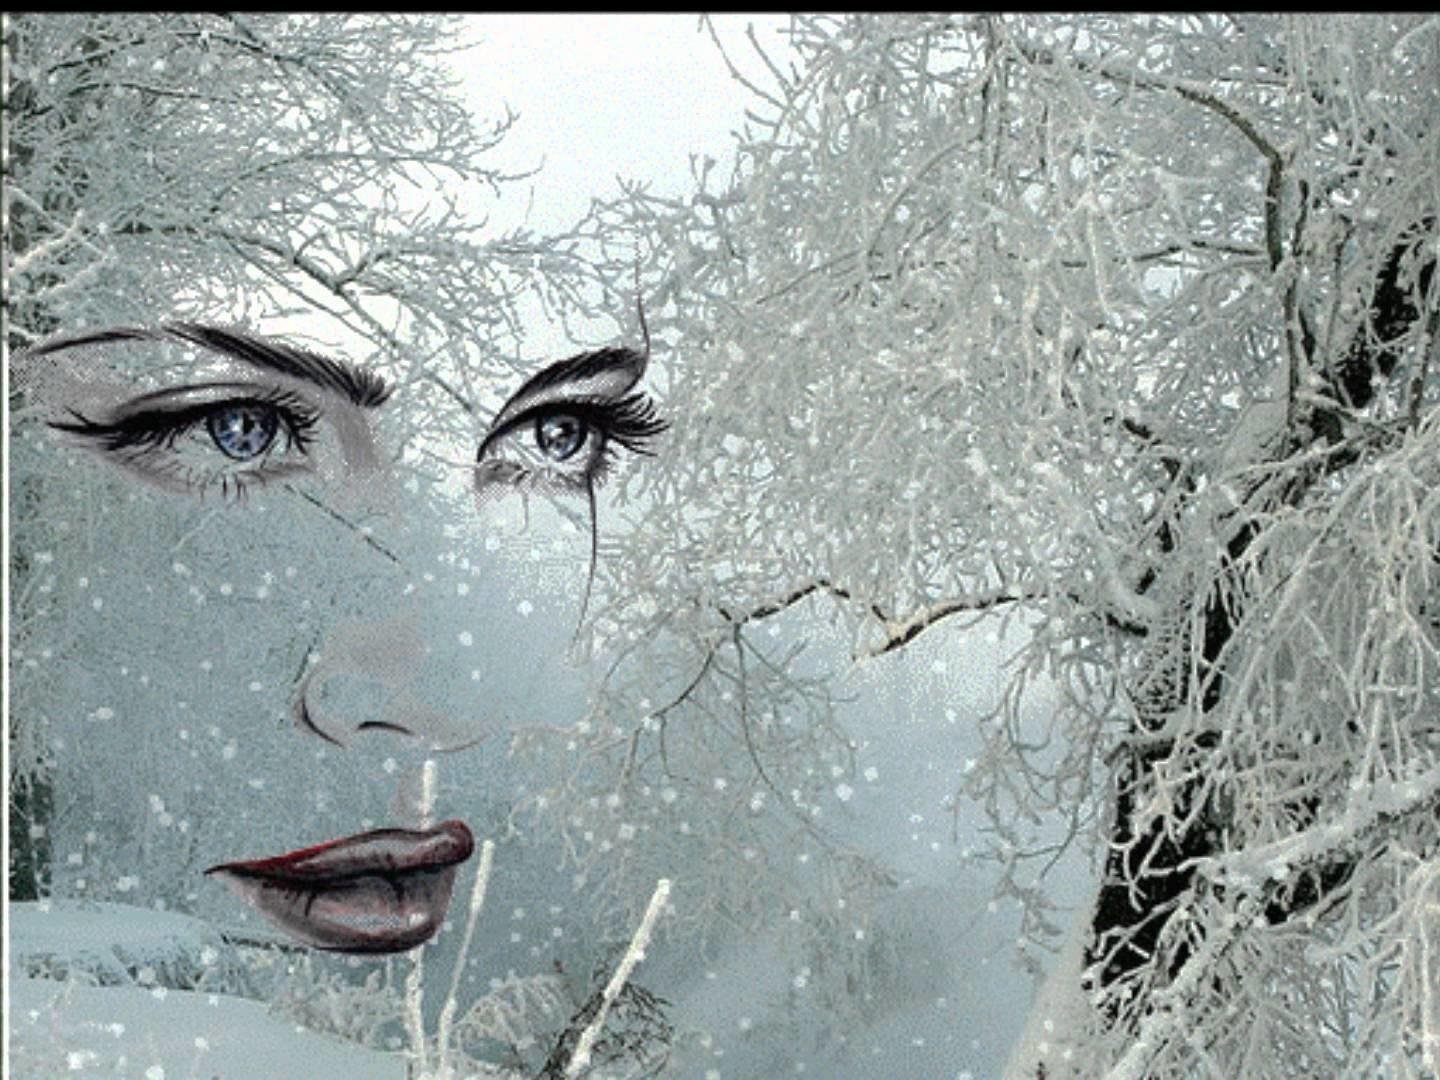 Словно снег на голову. Женщина в метель. Весенняя метель. Снег на ресницах. Женщина вьюга.